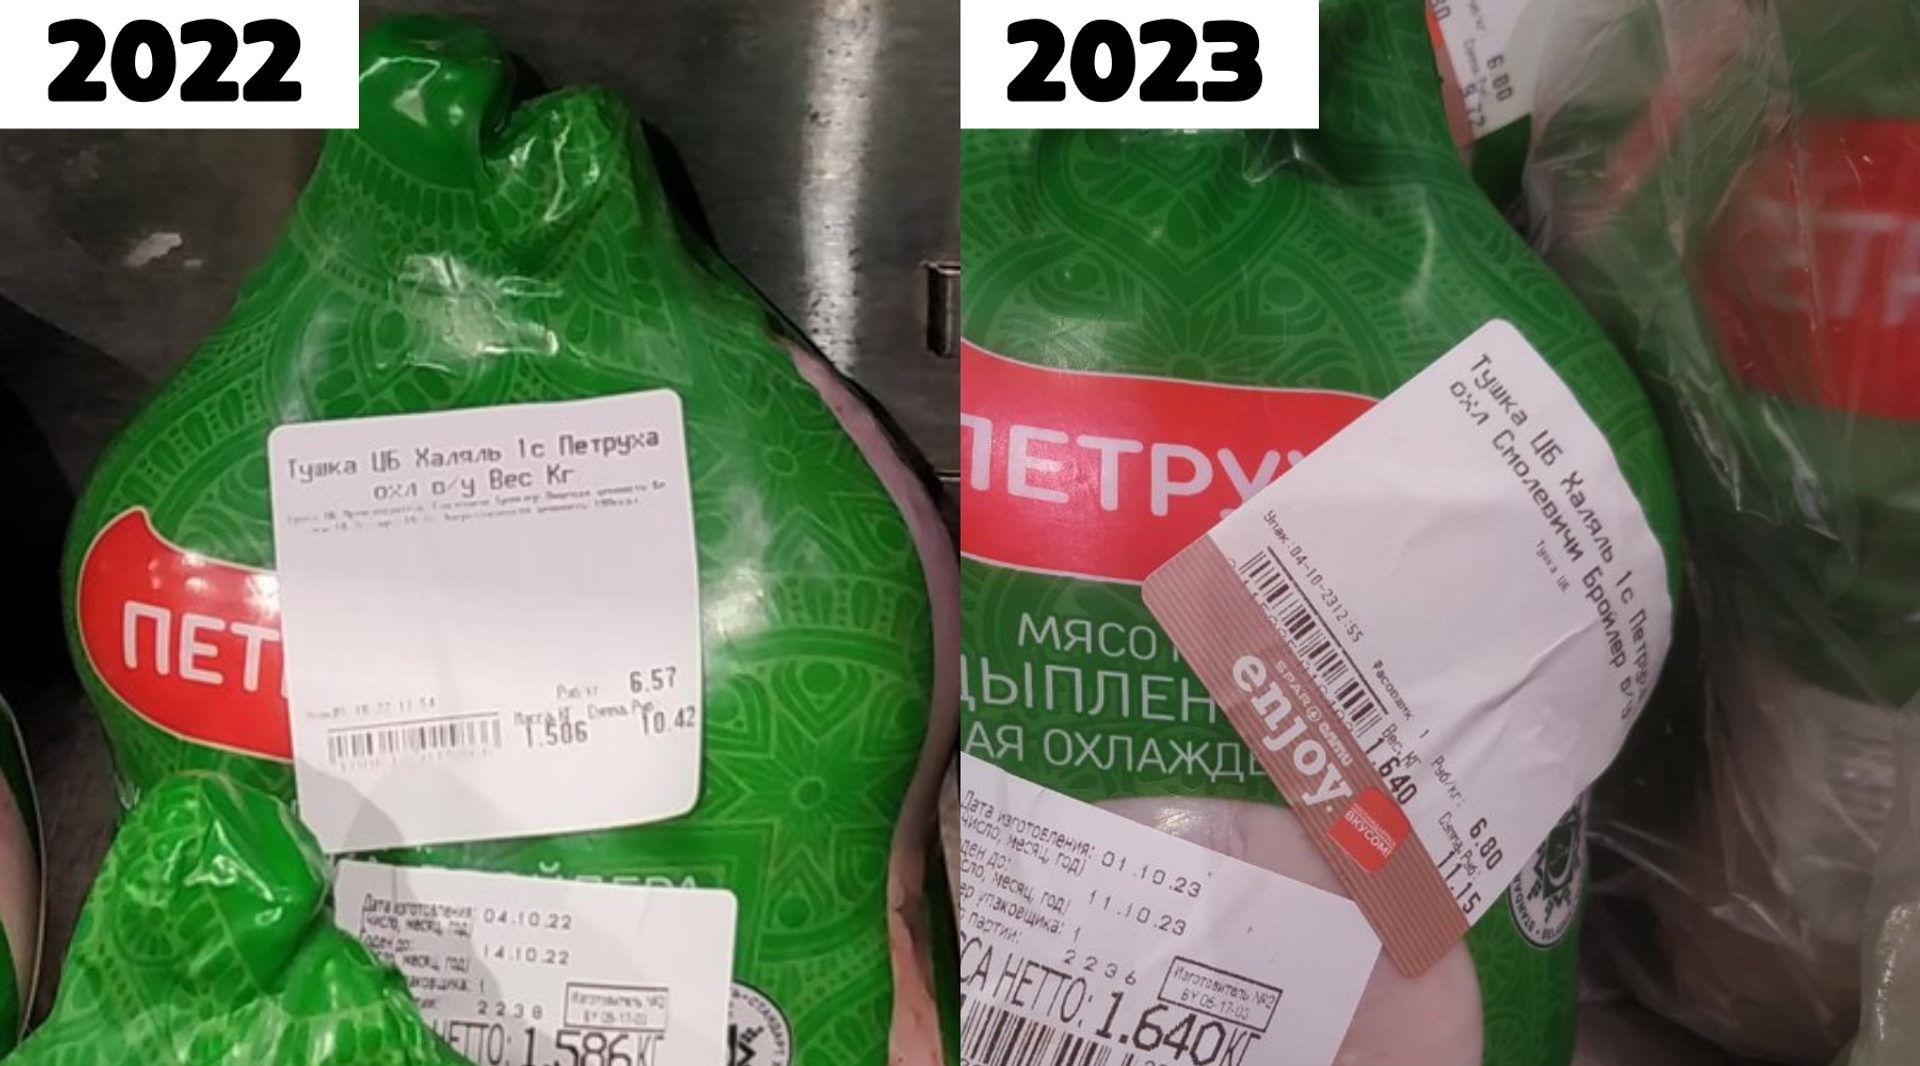 Цены в магазинах в 2022 и 2023 годах - Sputnik Беларусь, 1920, 05.10.2023